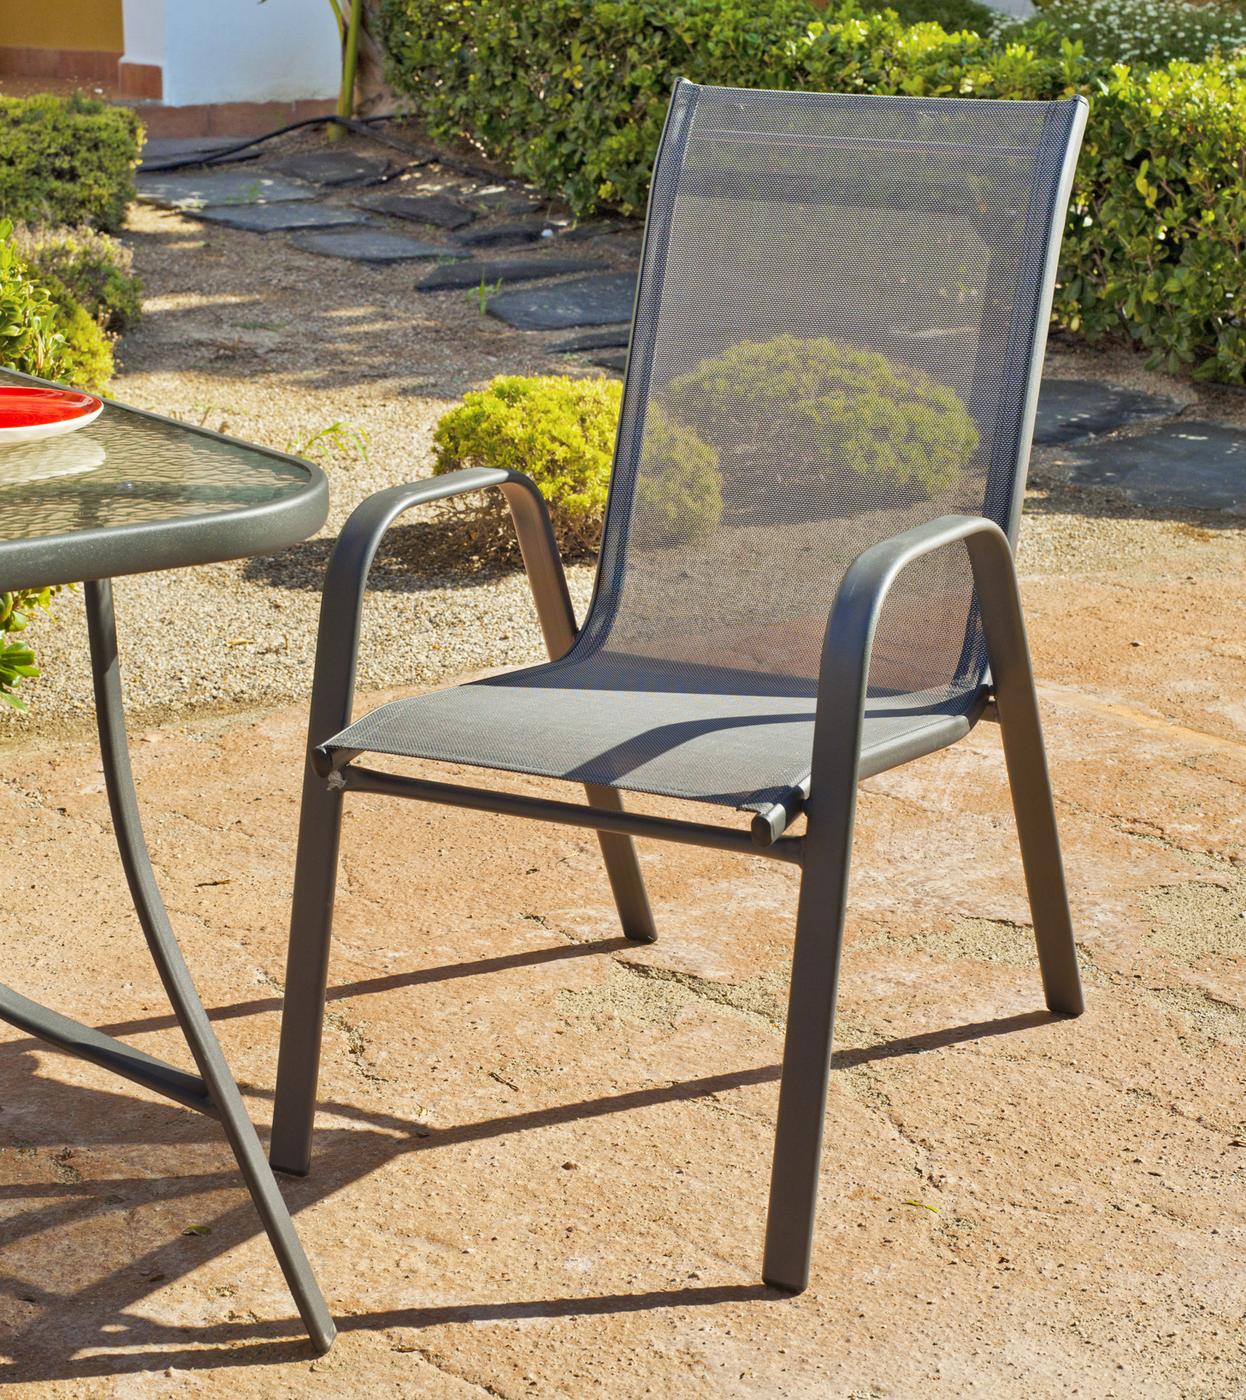 Conjunto Acero Sulam-90 - Conjunto de acero color antracita: mesa redonda de 90 cm, con tapa de cristal templado + 4 sillones apilables de acero y textilen